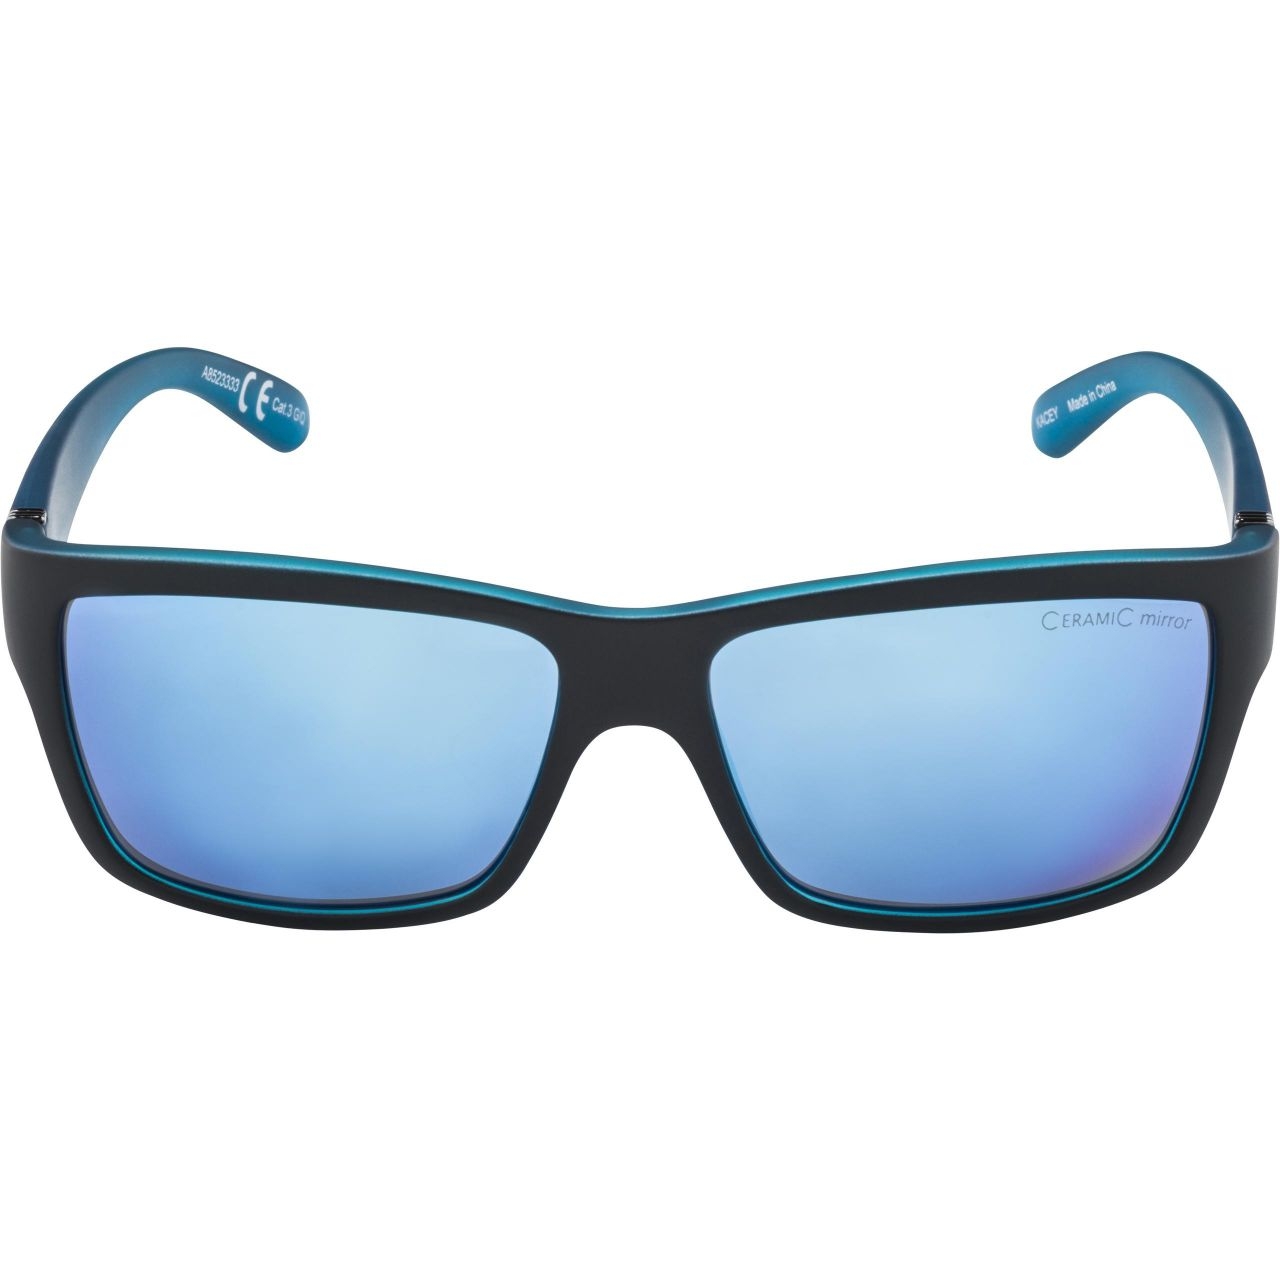 Alpina Erwachsene KACEY Sportbrille black matt-blue